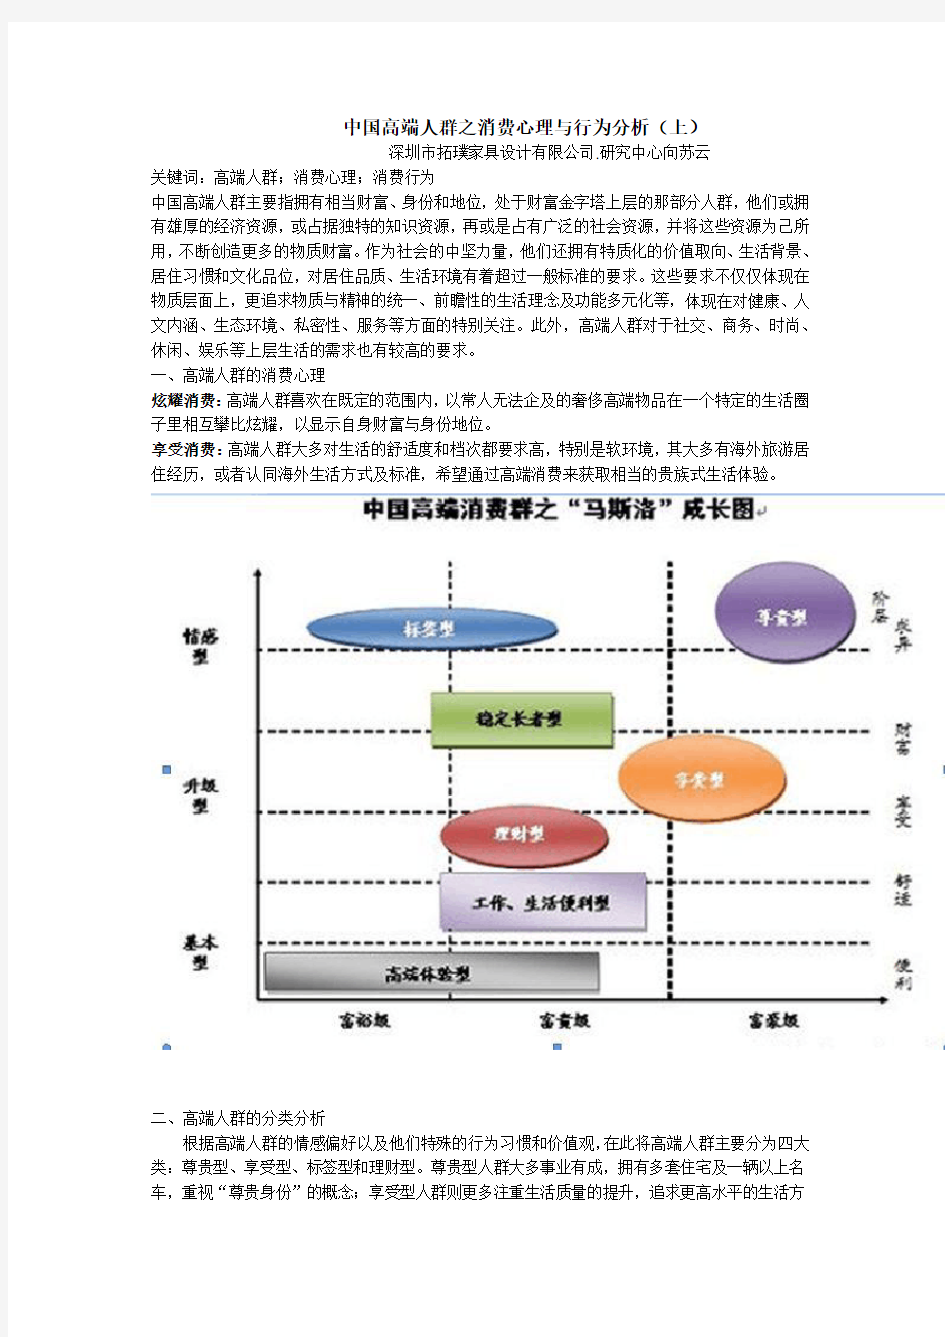 中国高端人群之消费心理与行为分析